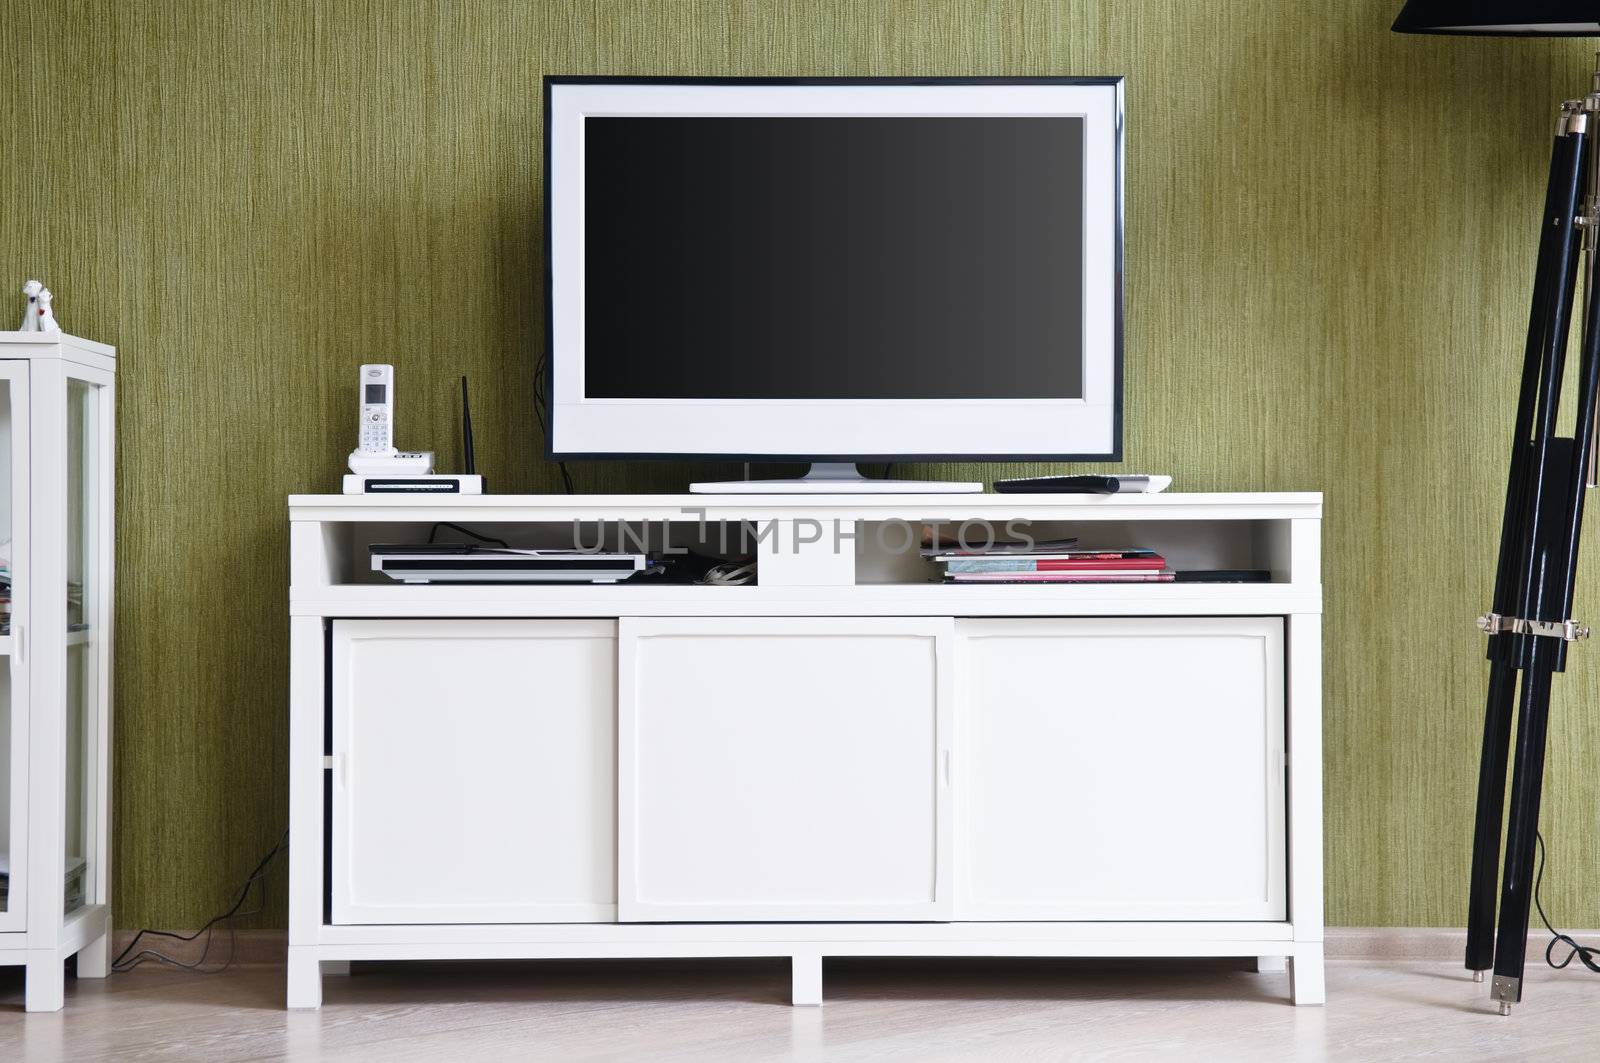 TV-set in home interior by shivanetua